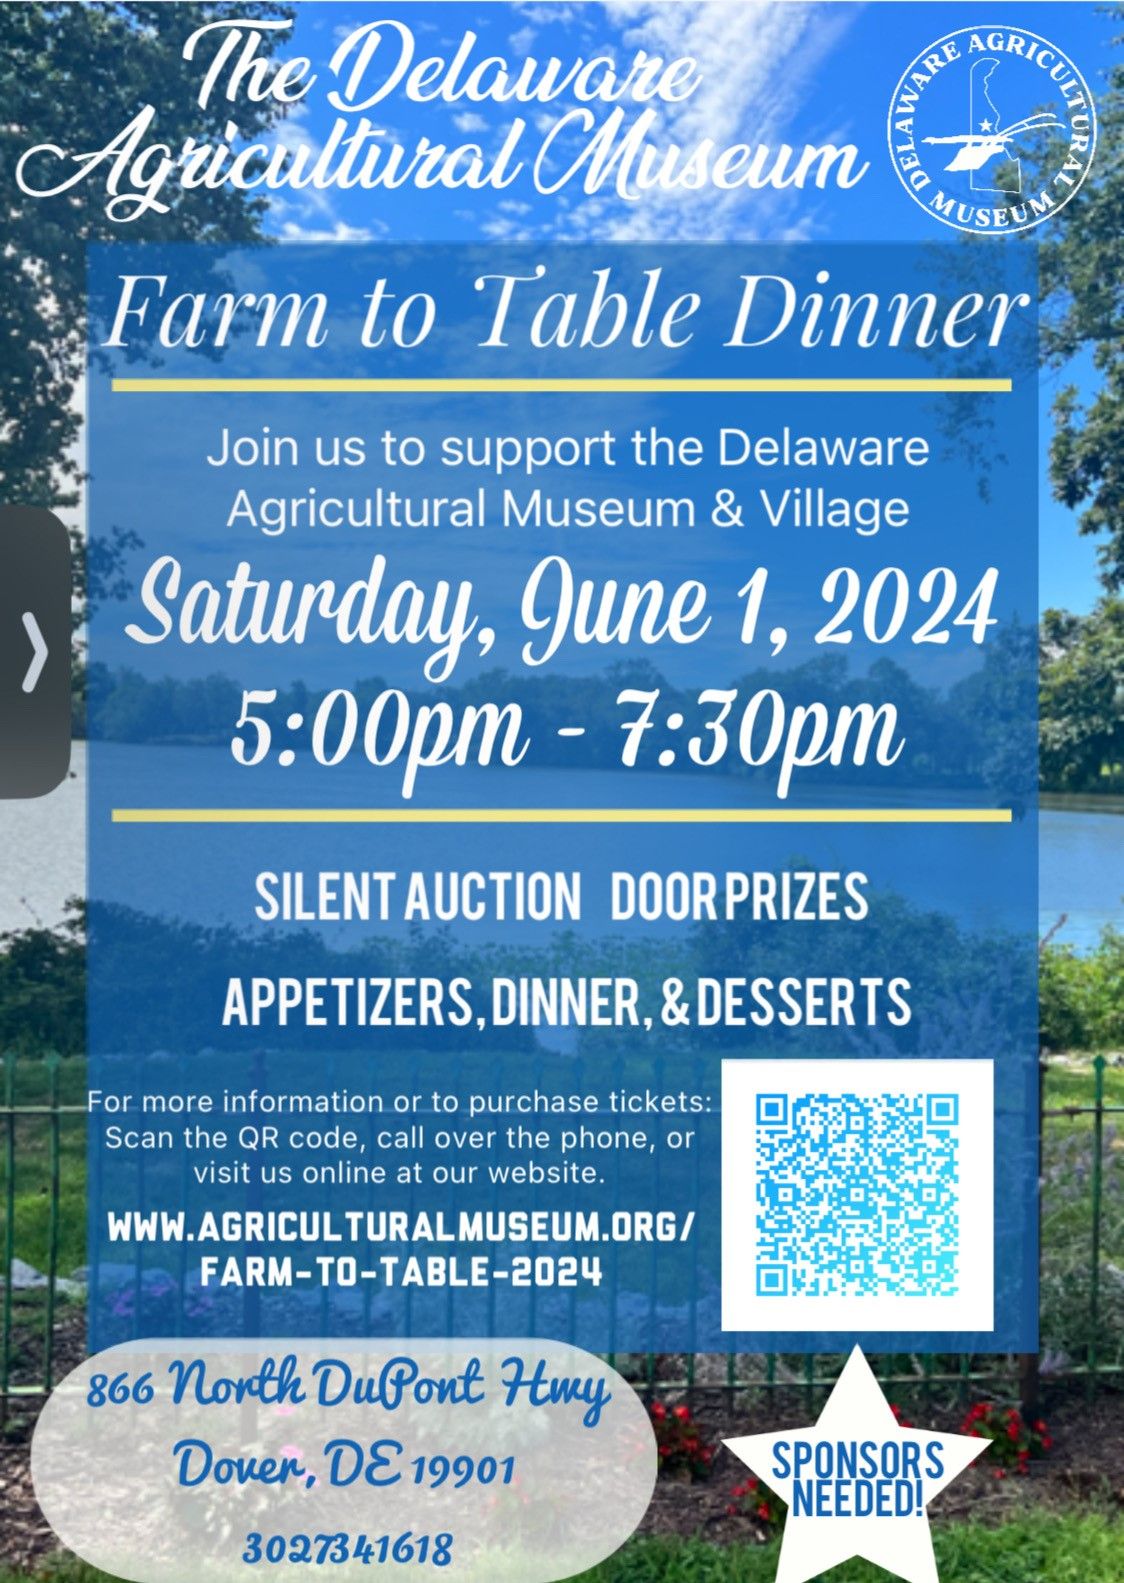 Farm to Table Dinner Fundraiser